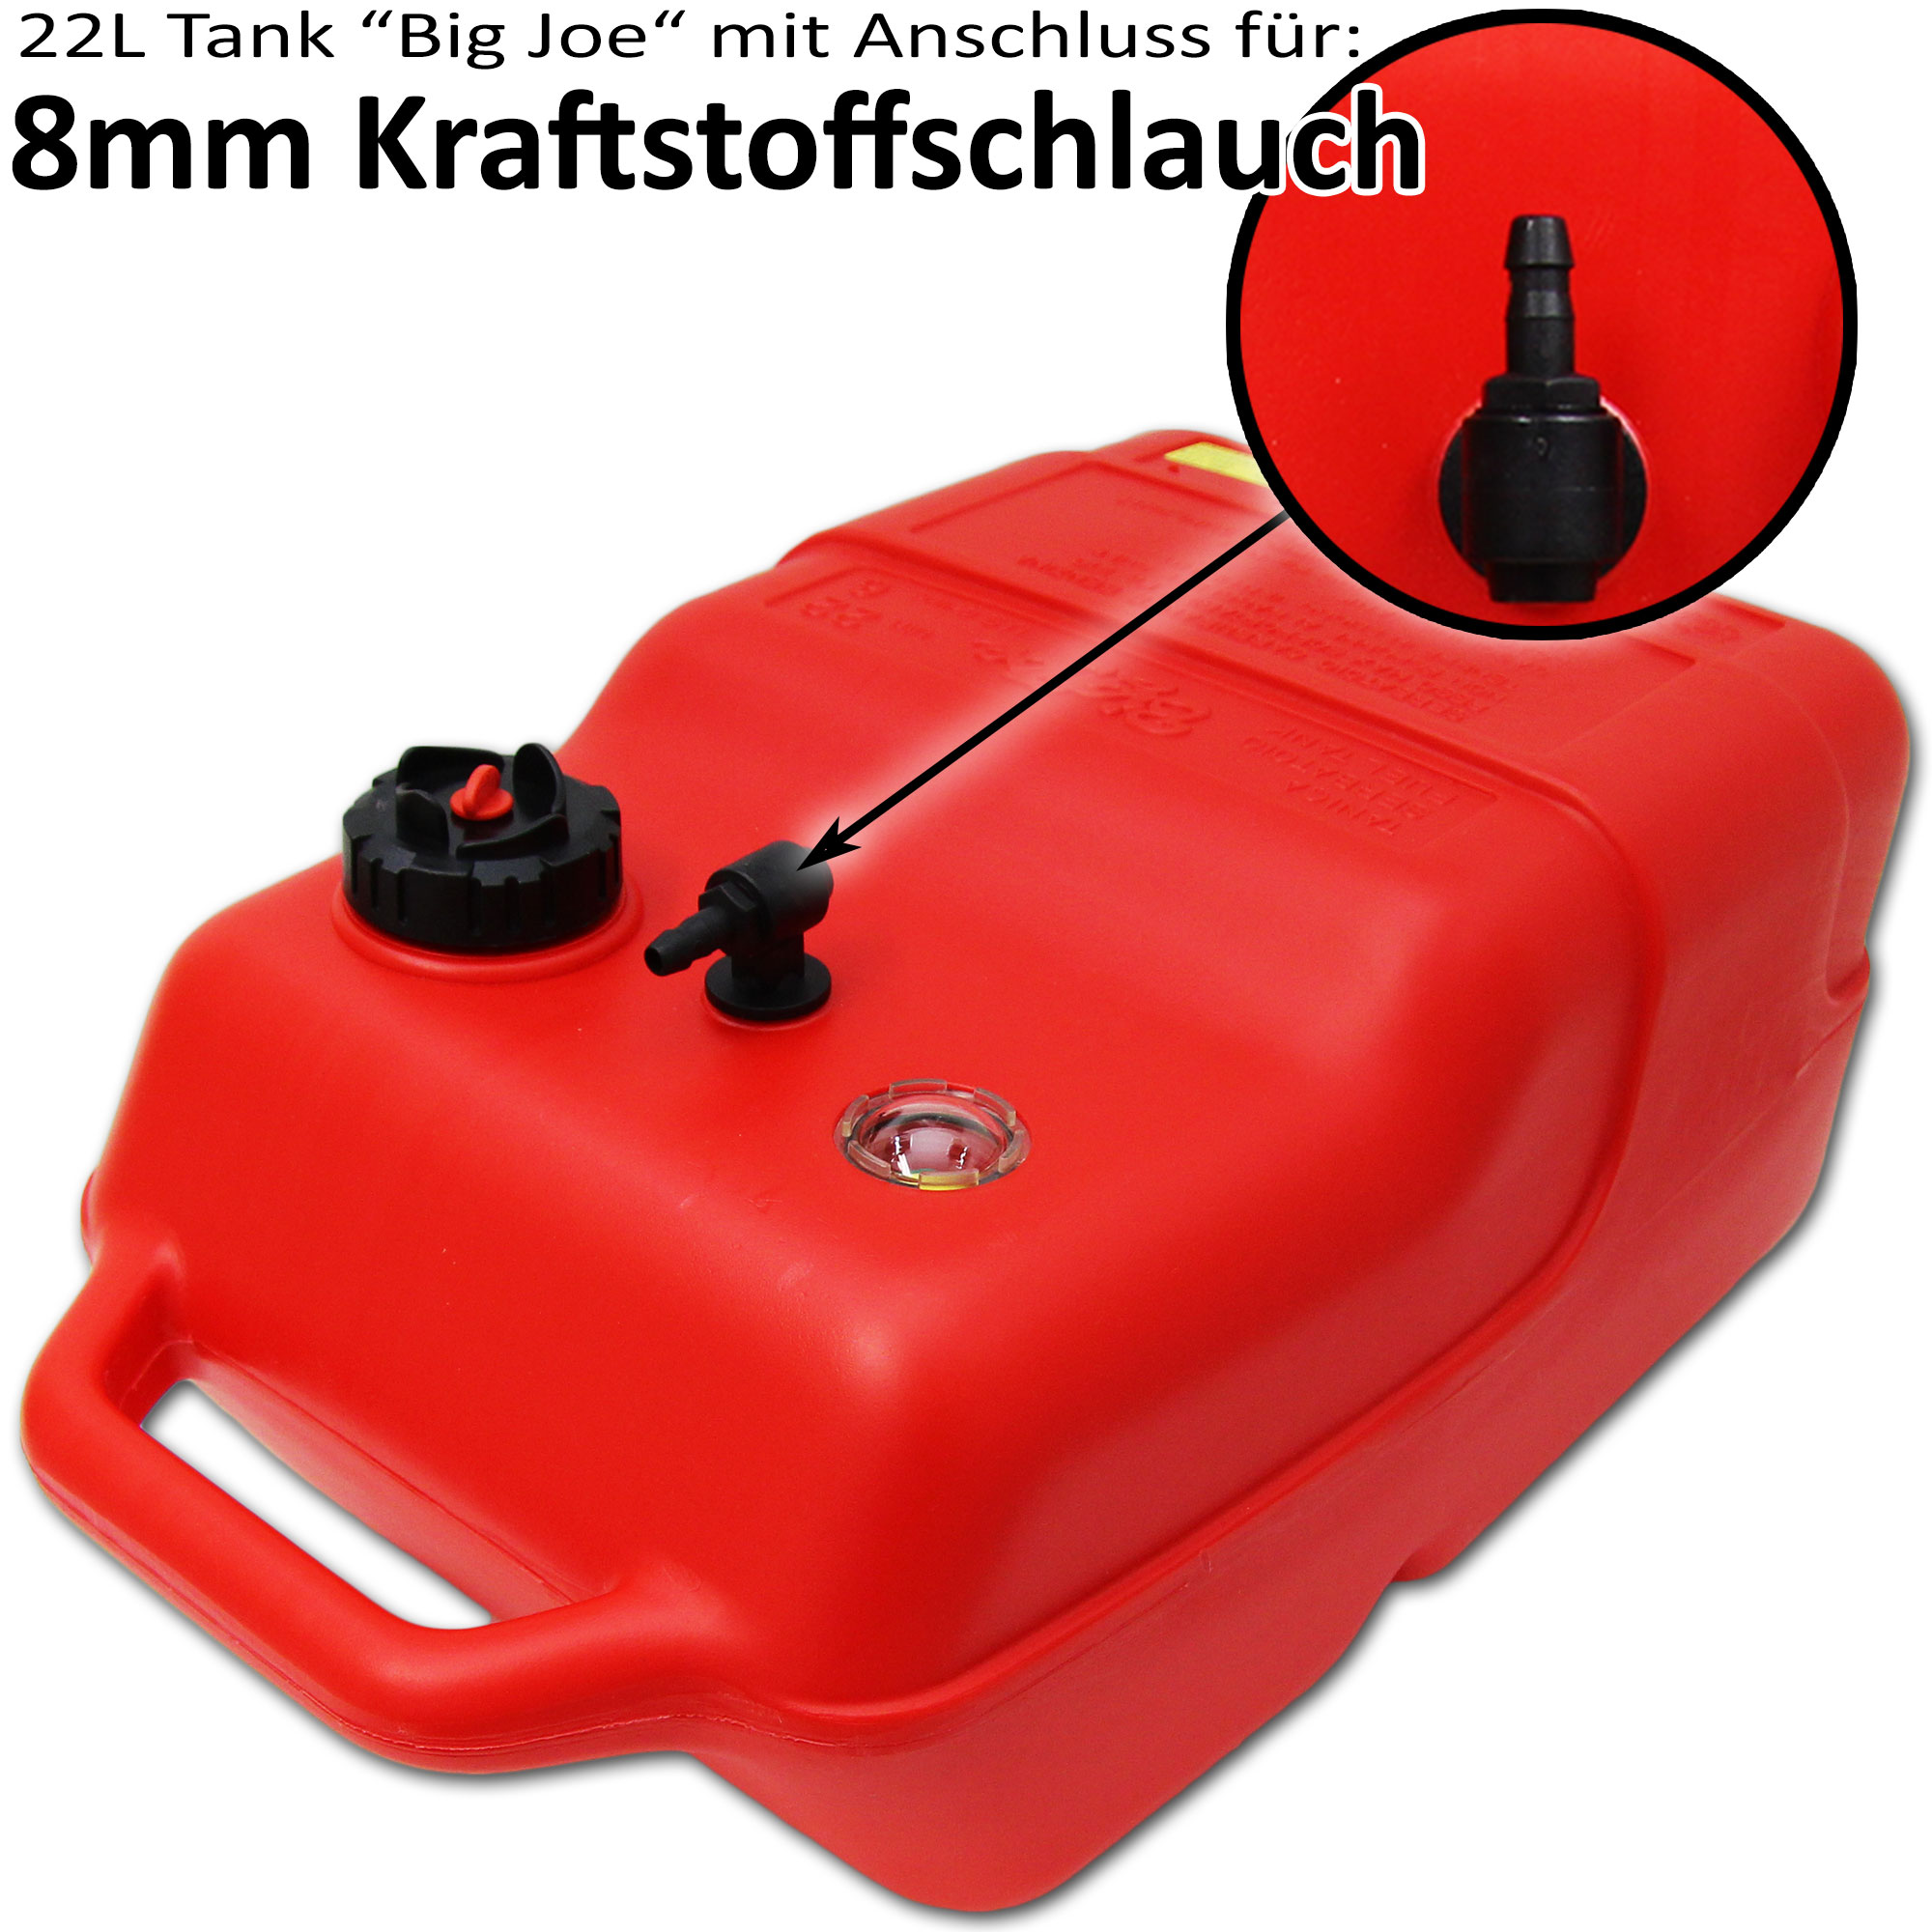 Kraftstofftank rot / Anschlussnippel (8mm) / FÃ¼llstandsanzeige manuell